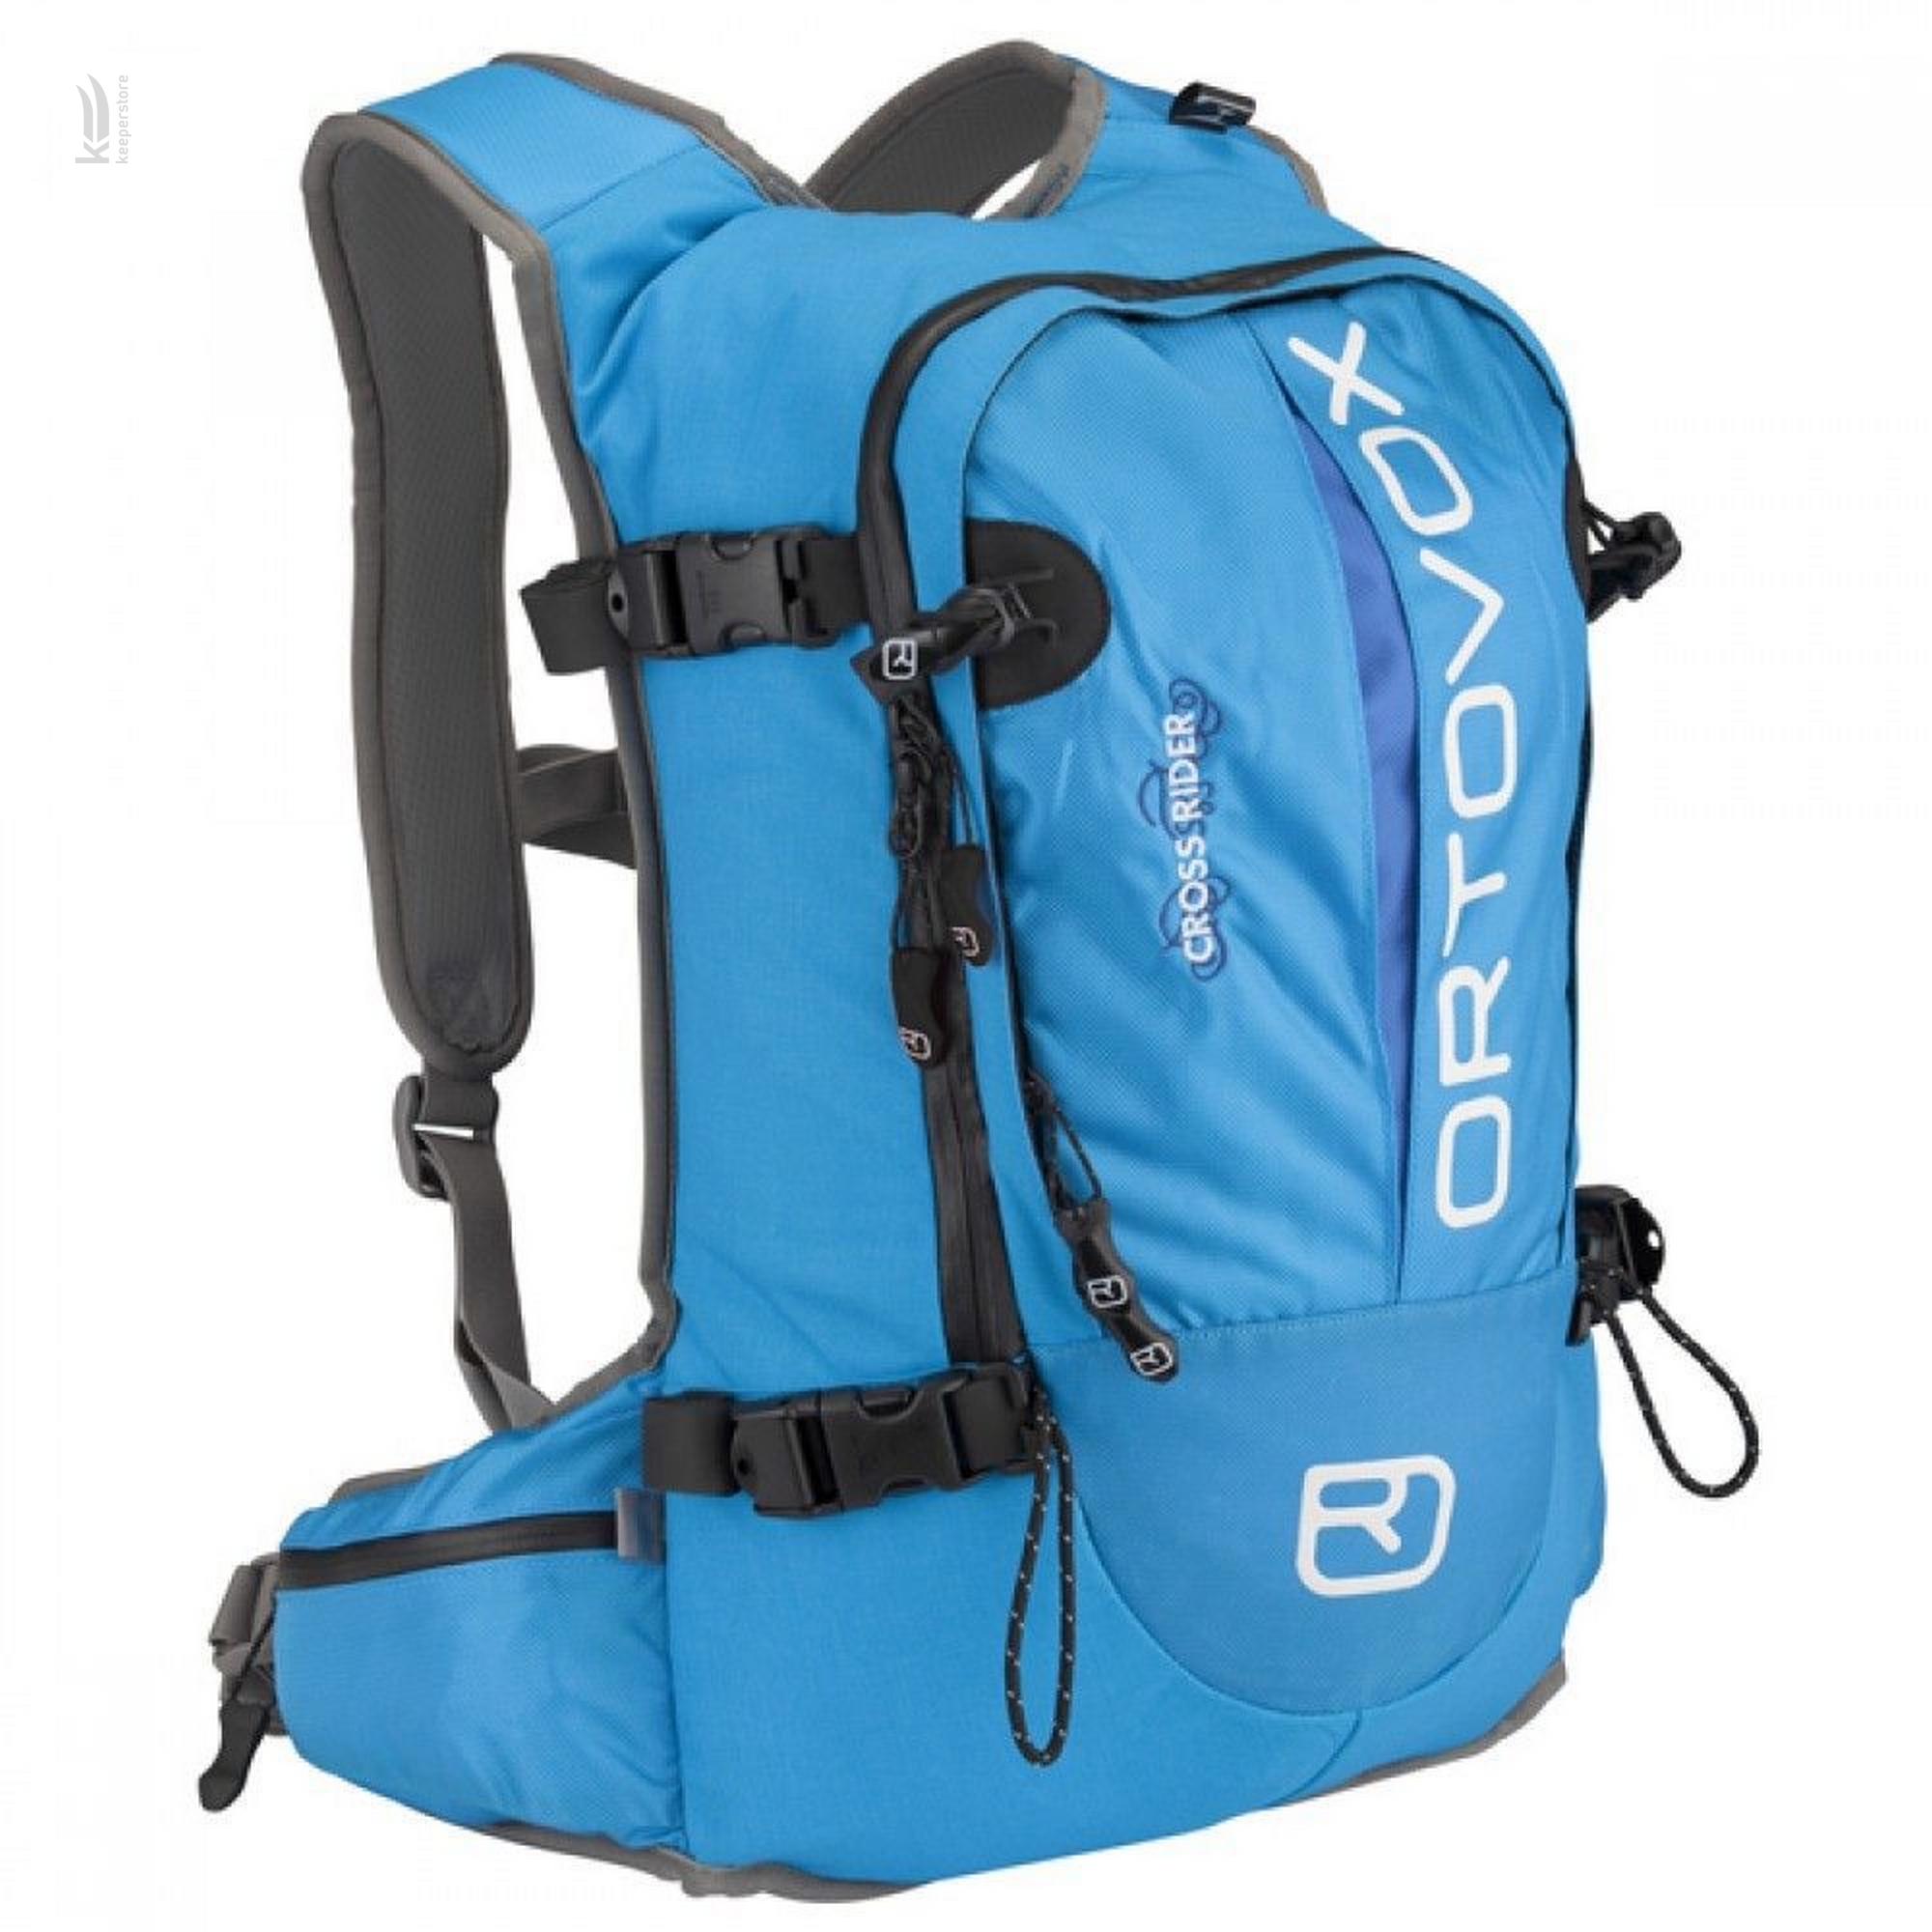 Цена горнолыжный рюкзак с защитой спины Ortovox Cross Rider W Blue в Киеве